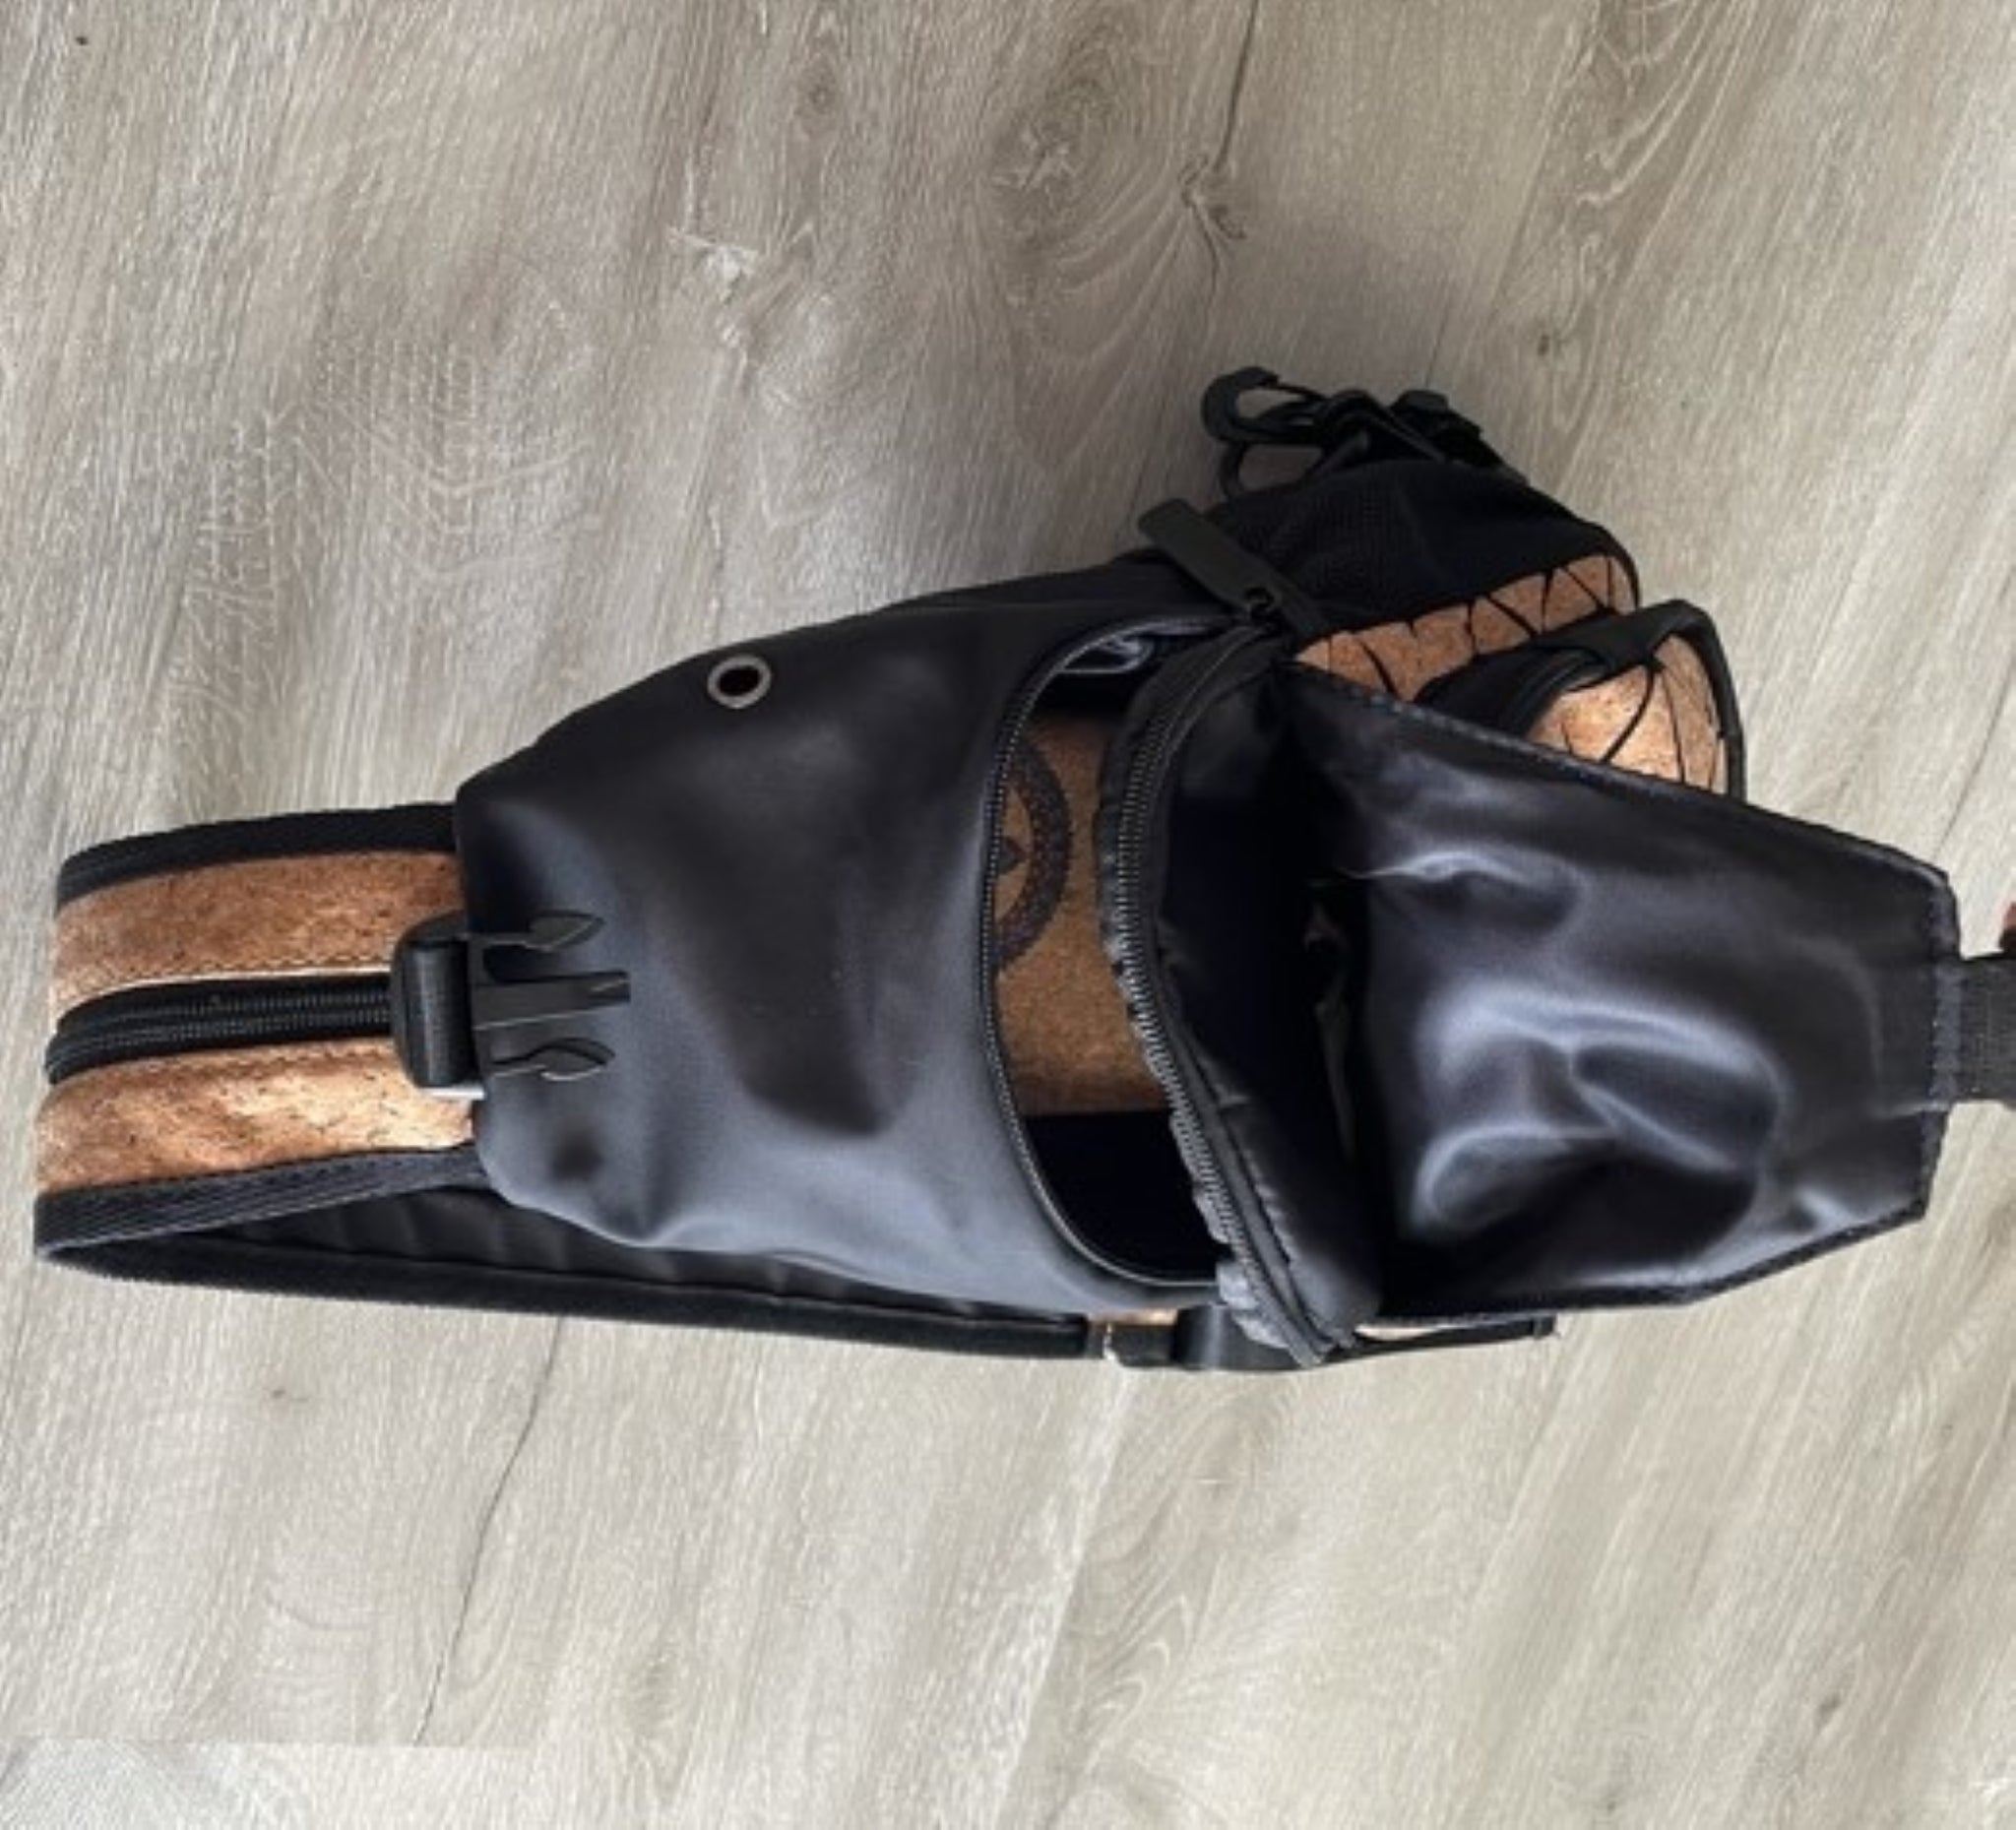 Cork Sling Bag Chest Shoulder Backpack Fanny Pack Crossbody Bags – Cork  Culture US